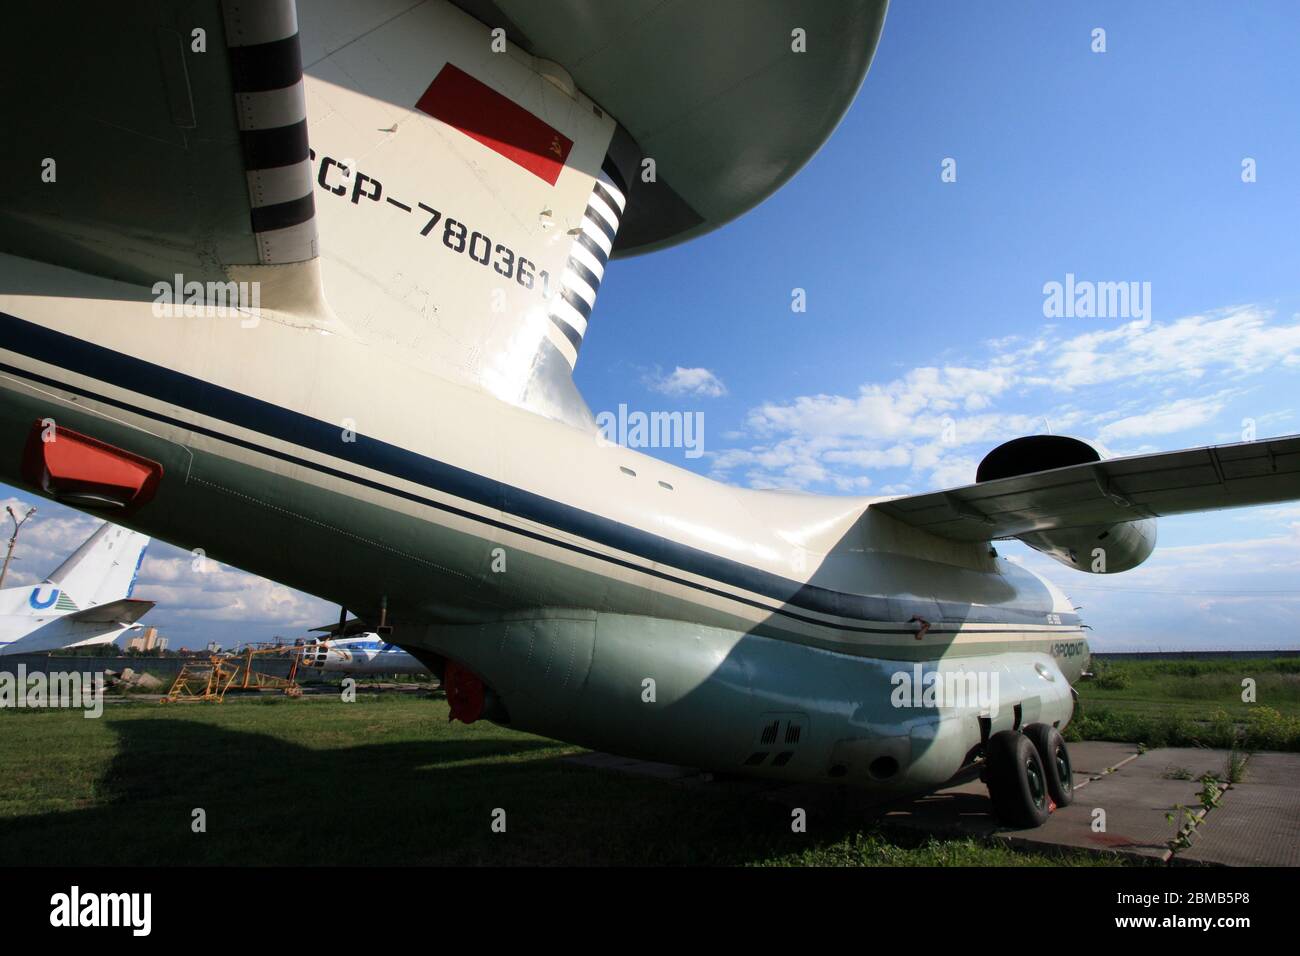 La cupola radar (rotodome) in cima allo stabilizzatore verticale del 'Madelp' sovietico AWACS Antonov AN-71 al Museo dell'aviazione di Stato di Zhulyany dell'Ucraina Foto Stock